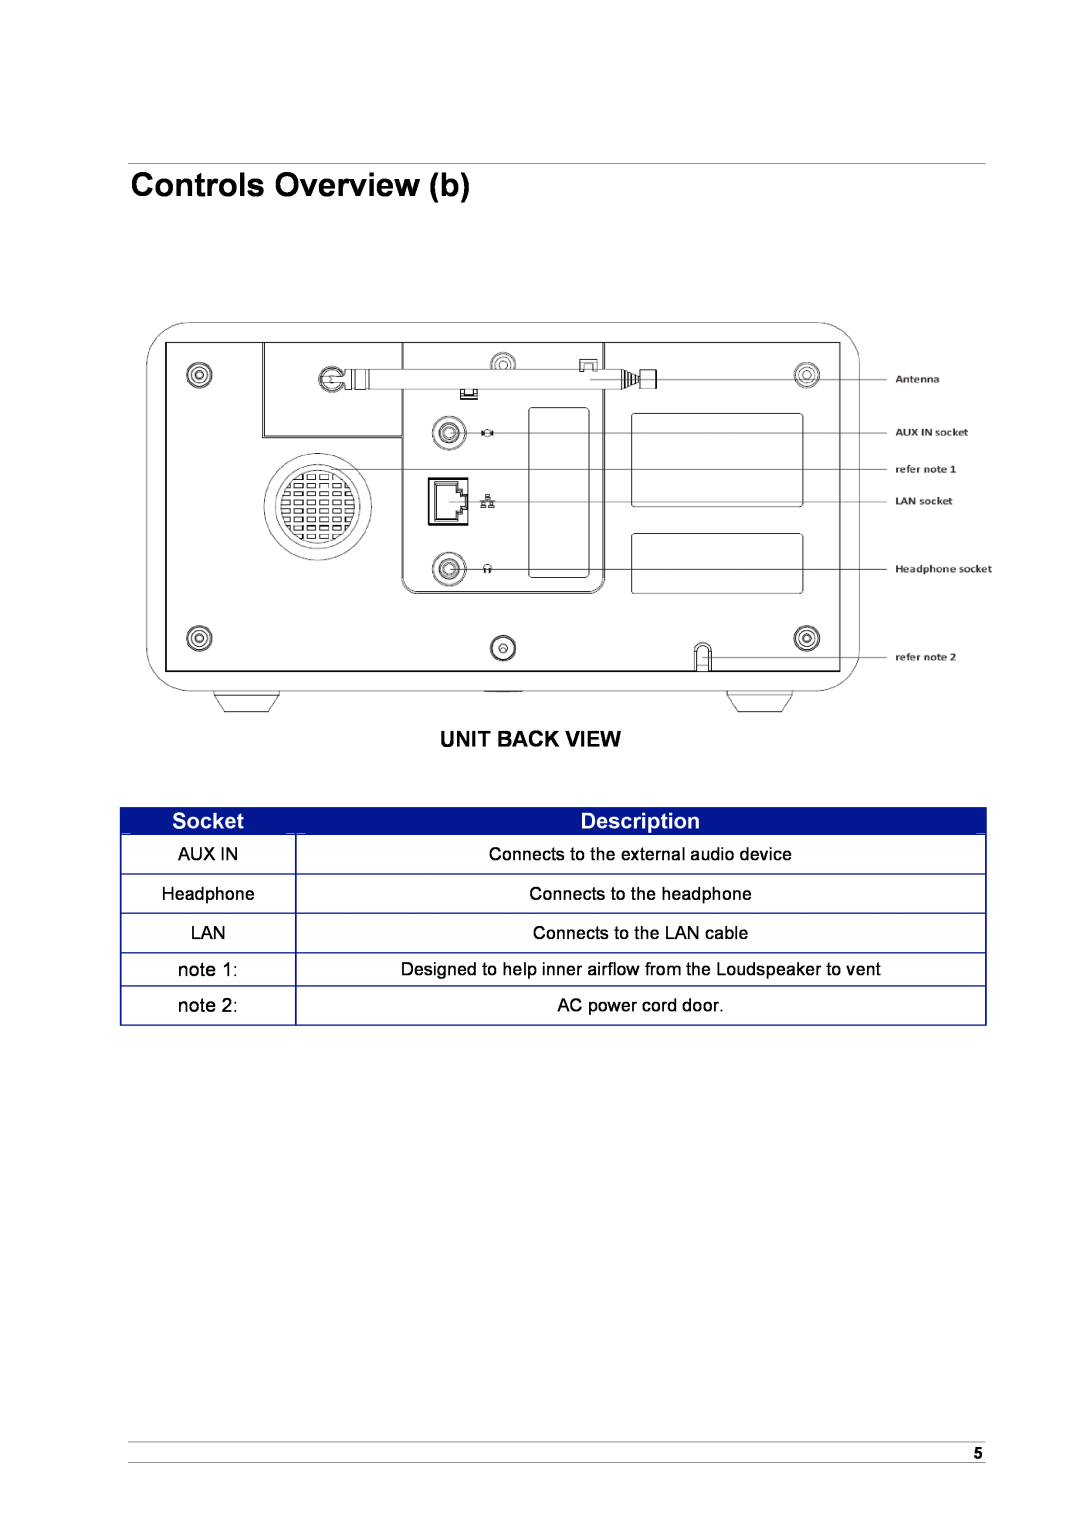 Cobra Electronics CIR 1000 E, CIR 1000 A manual Controls Overview b, Unit Back View, Socket, Description 